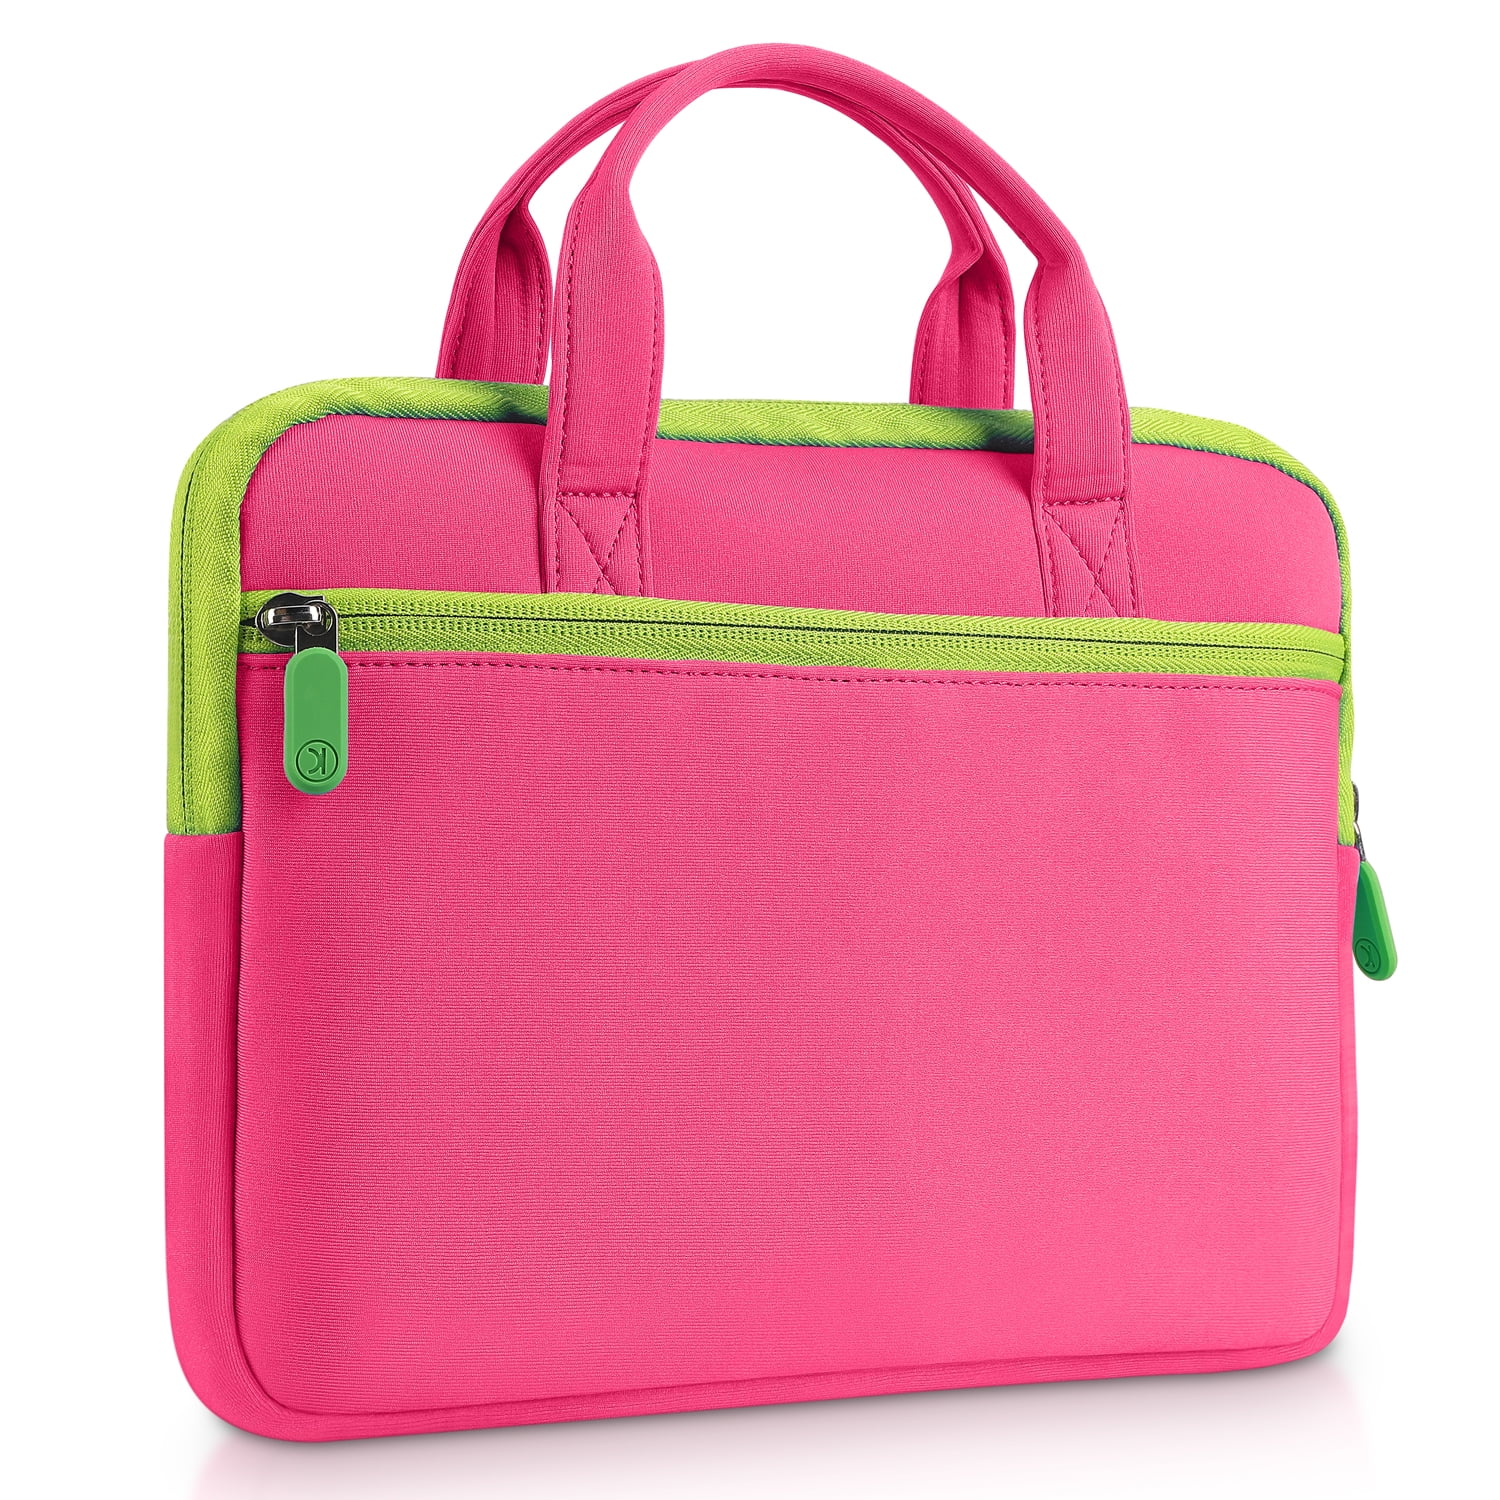 Vankyo MatrixPad Z1 Kids 7 inch Tablet Bag Case, (Pink) - Walmart.com